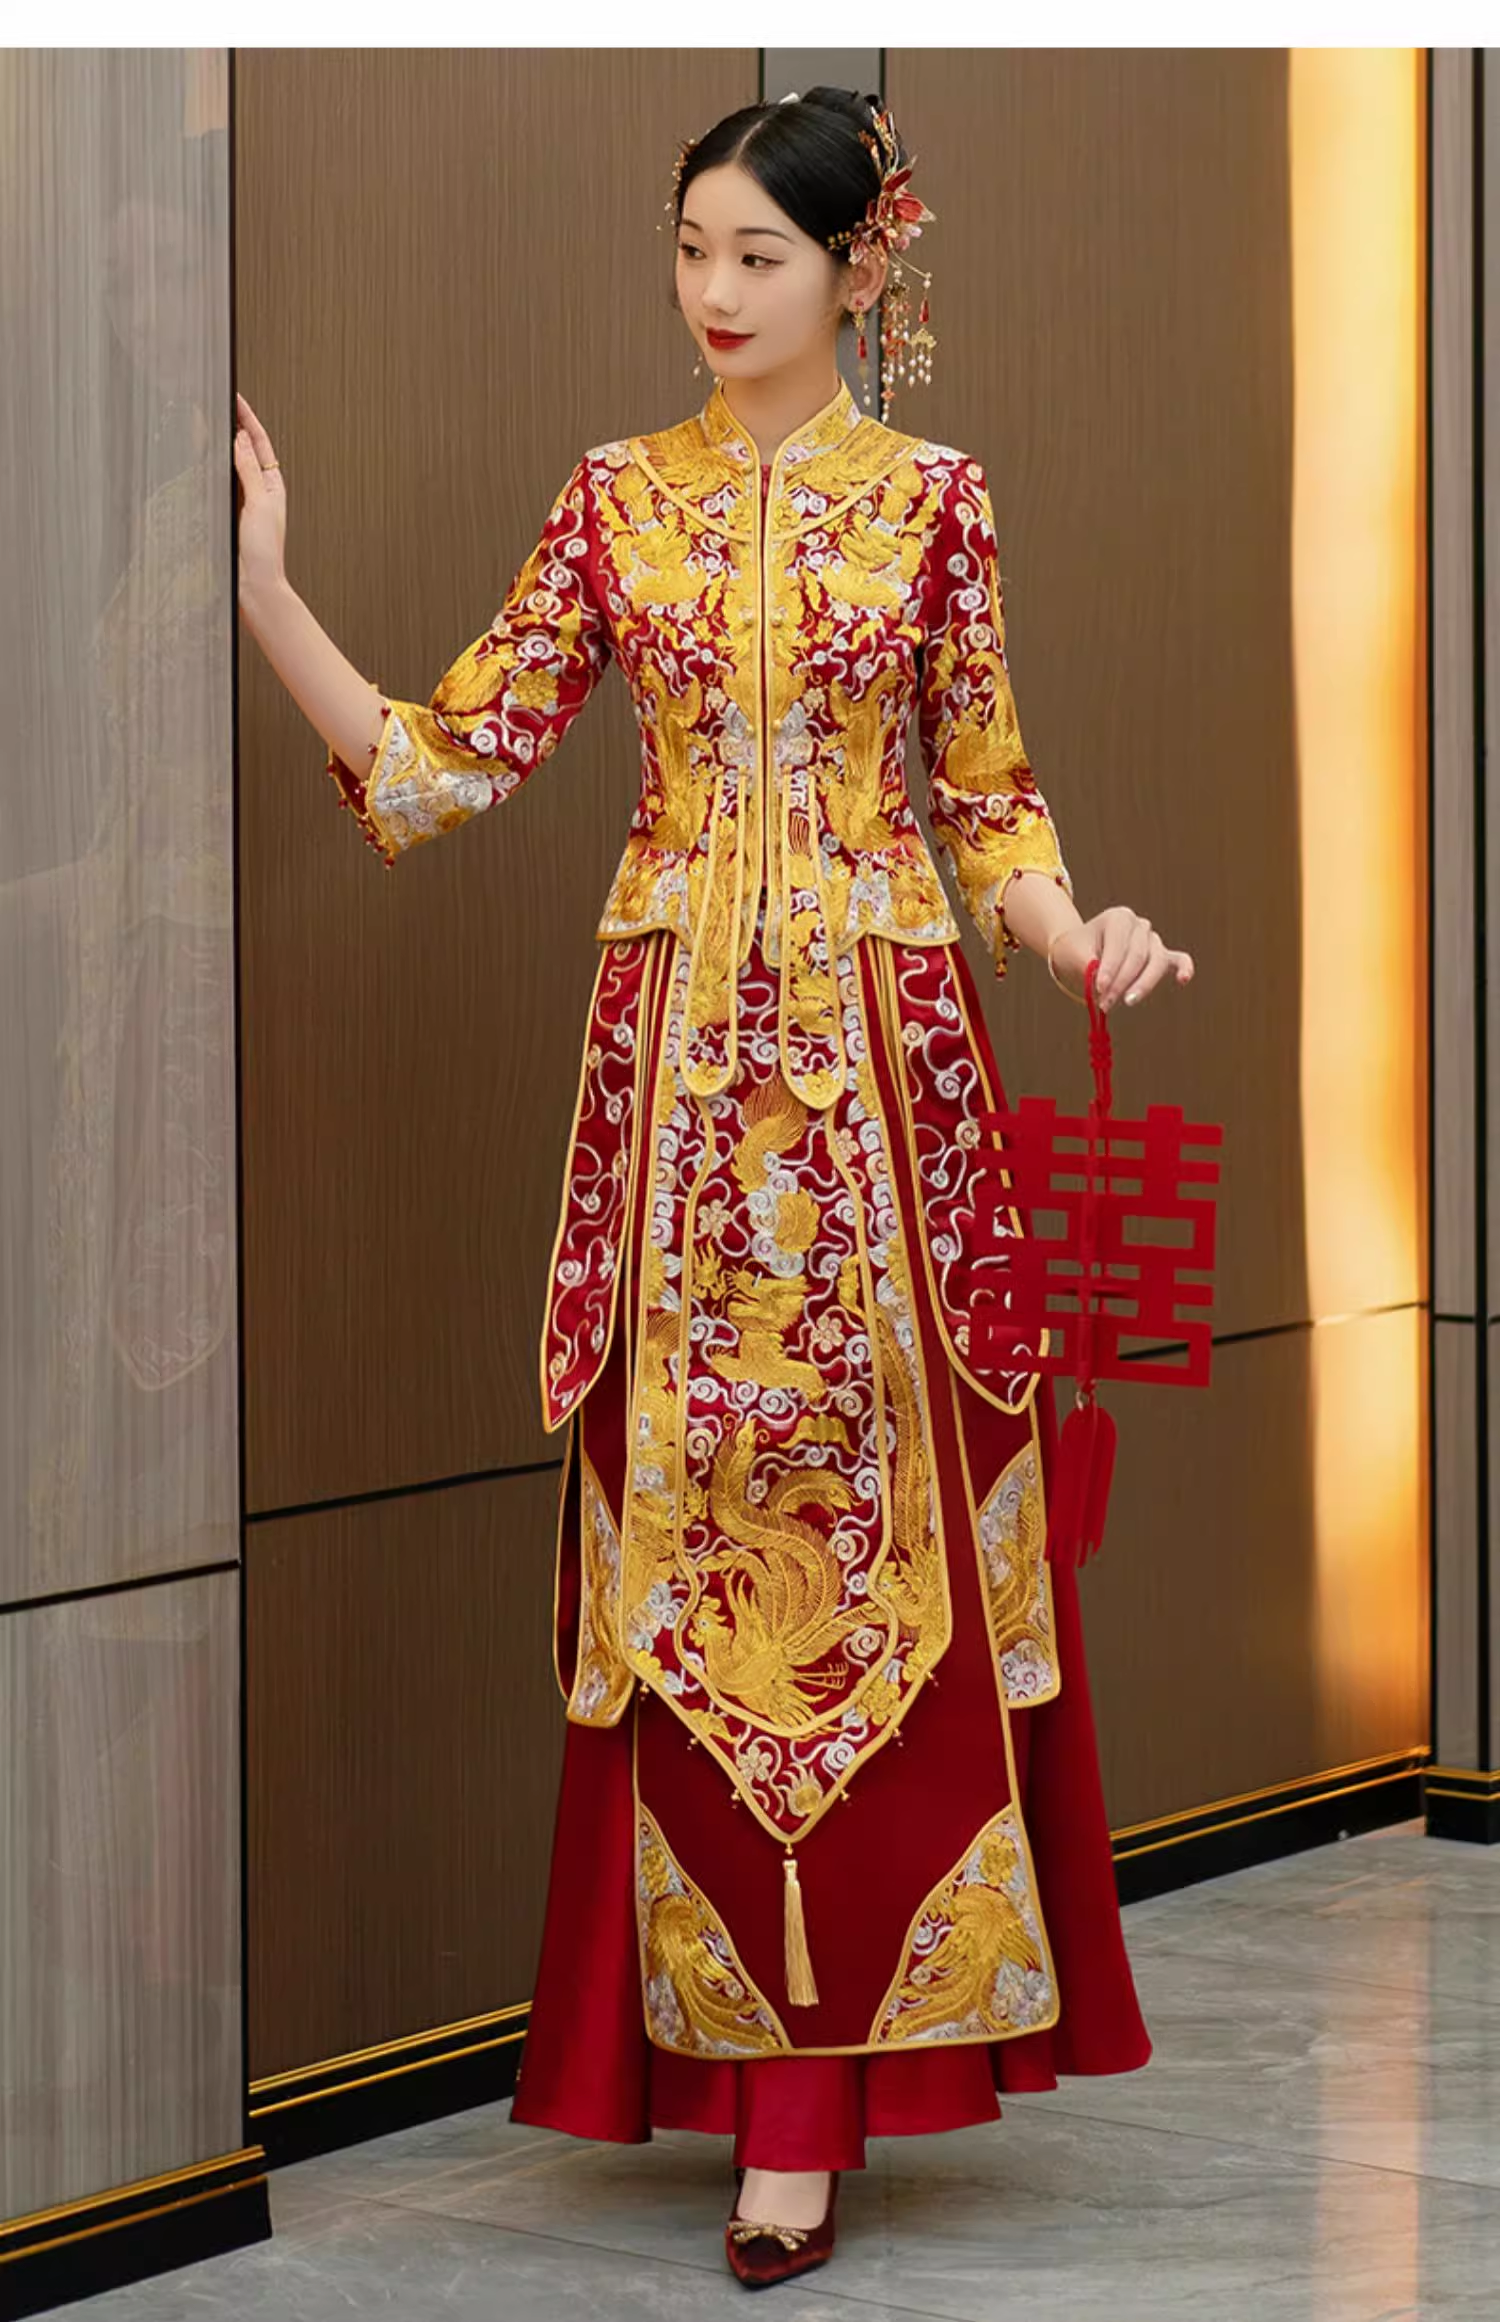  Traditional chinese wedding dress qun kwa